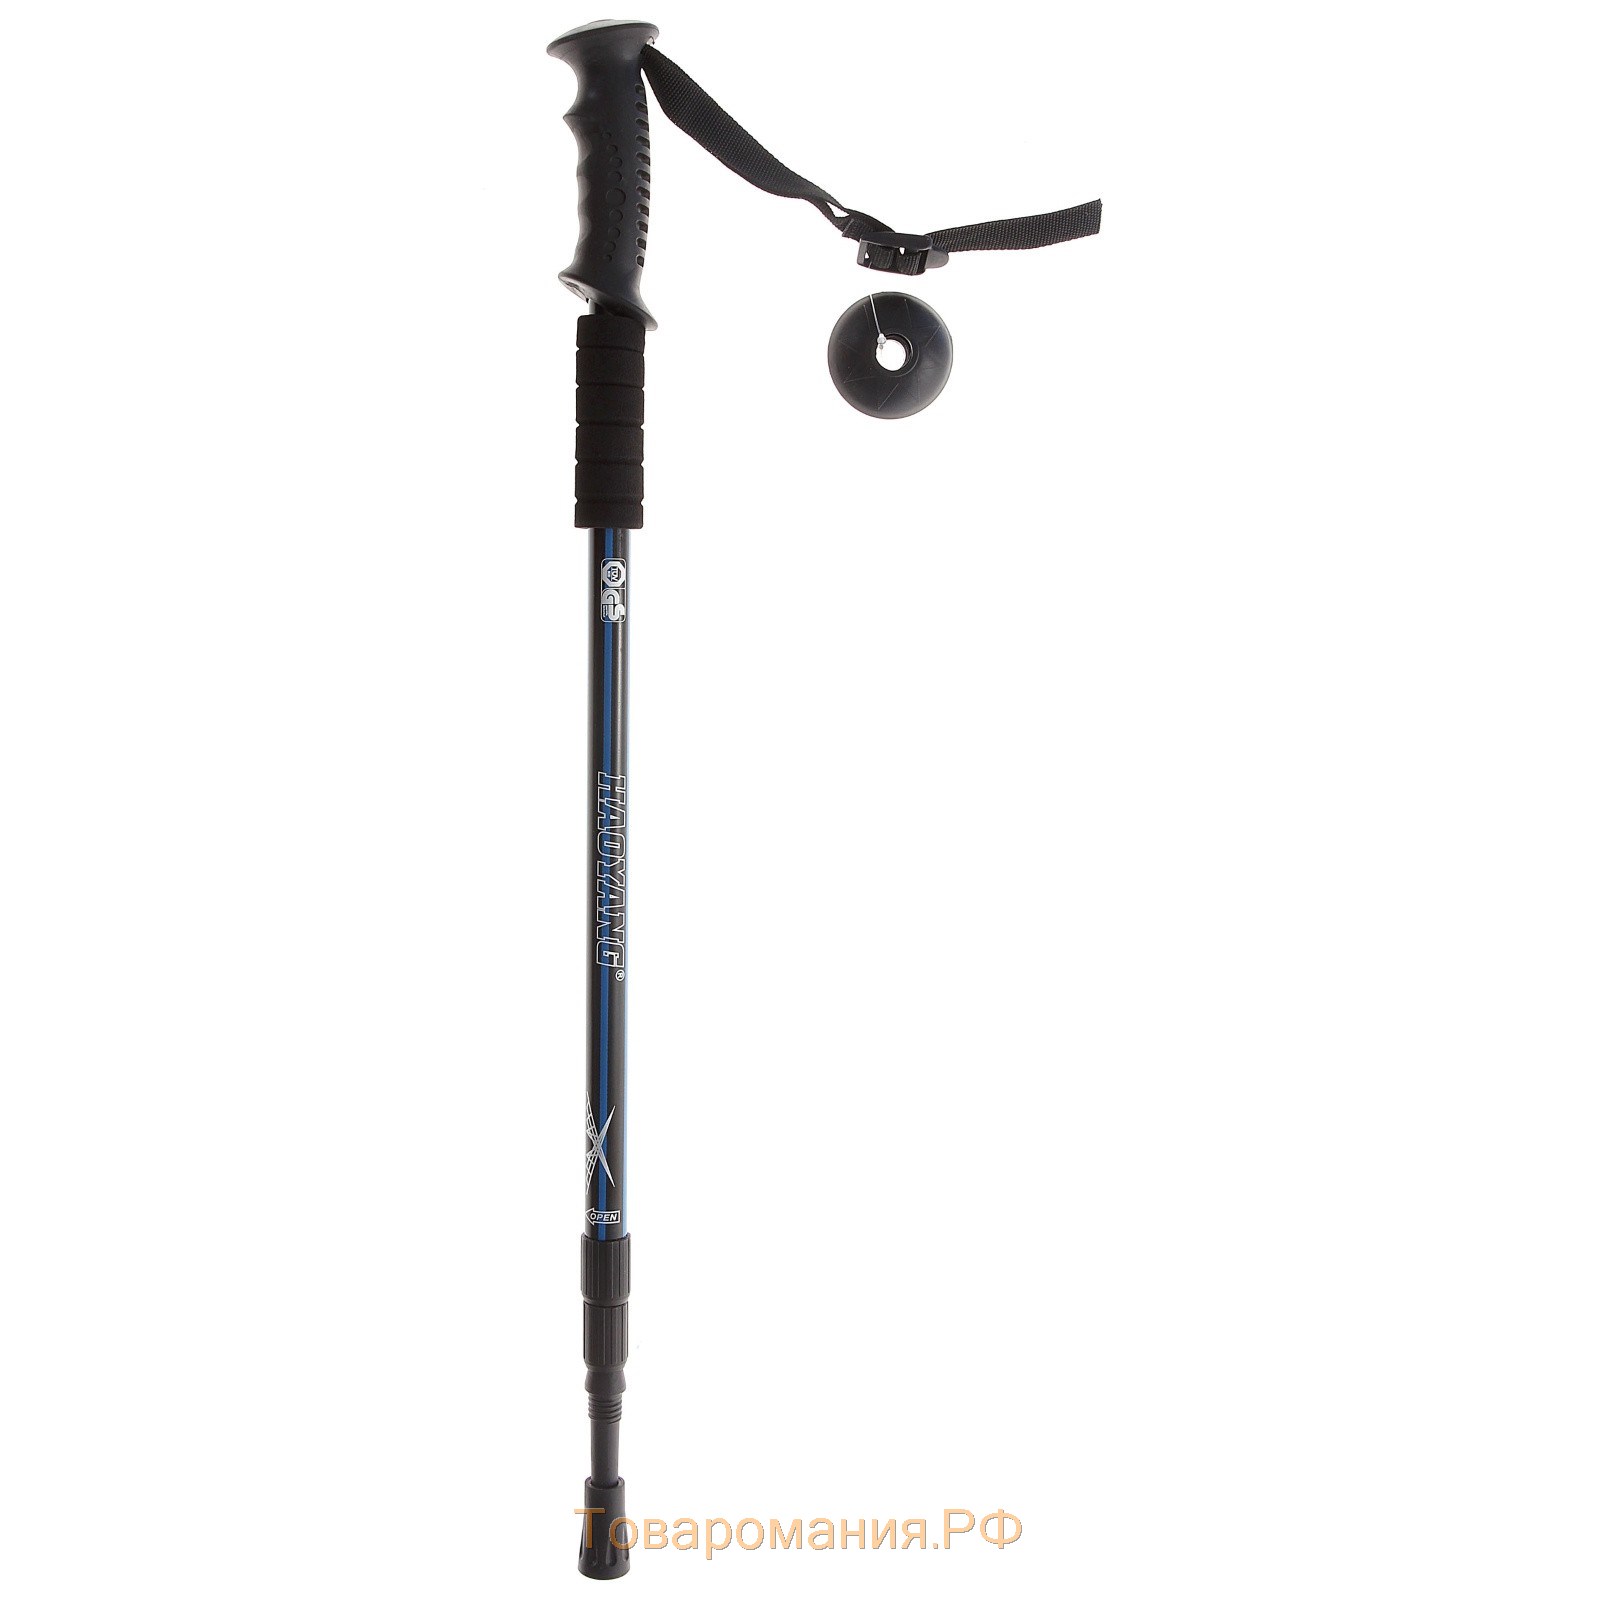 Палка для скандинавской ходьбы ONLYTOP, телескопическая, 3-секционная, 135 см, 1 шт.